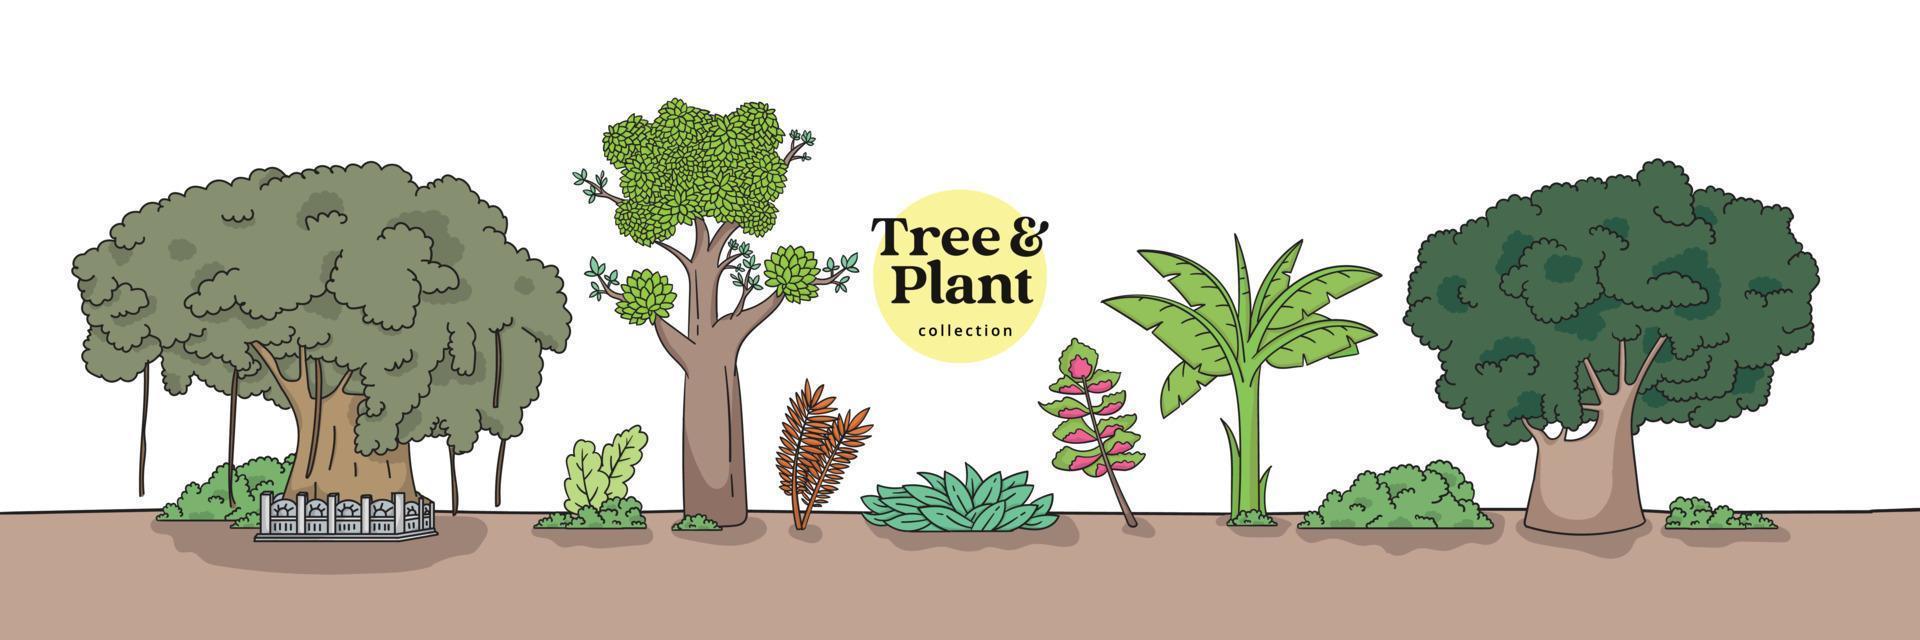 raccolta isolata di alberi e piante. illustrazione disegnata a mano di vari alberi. vettore